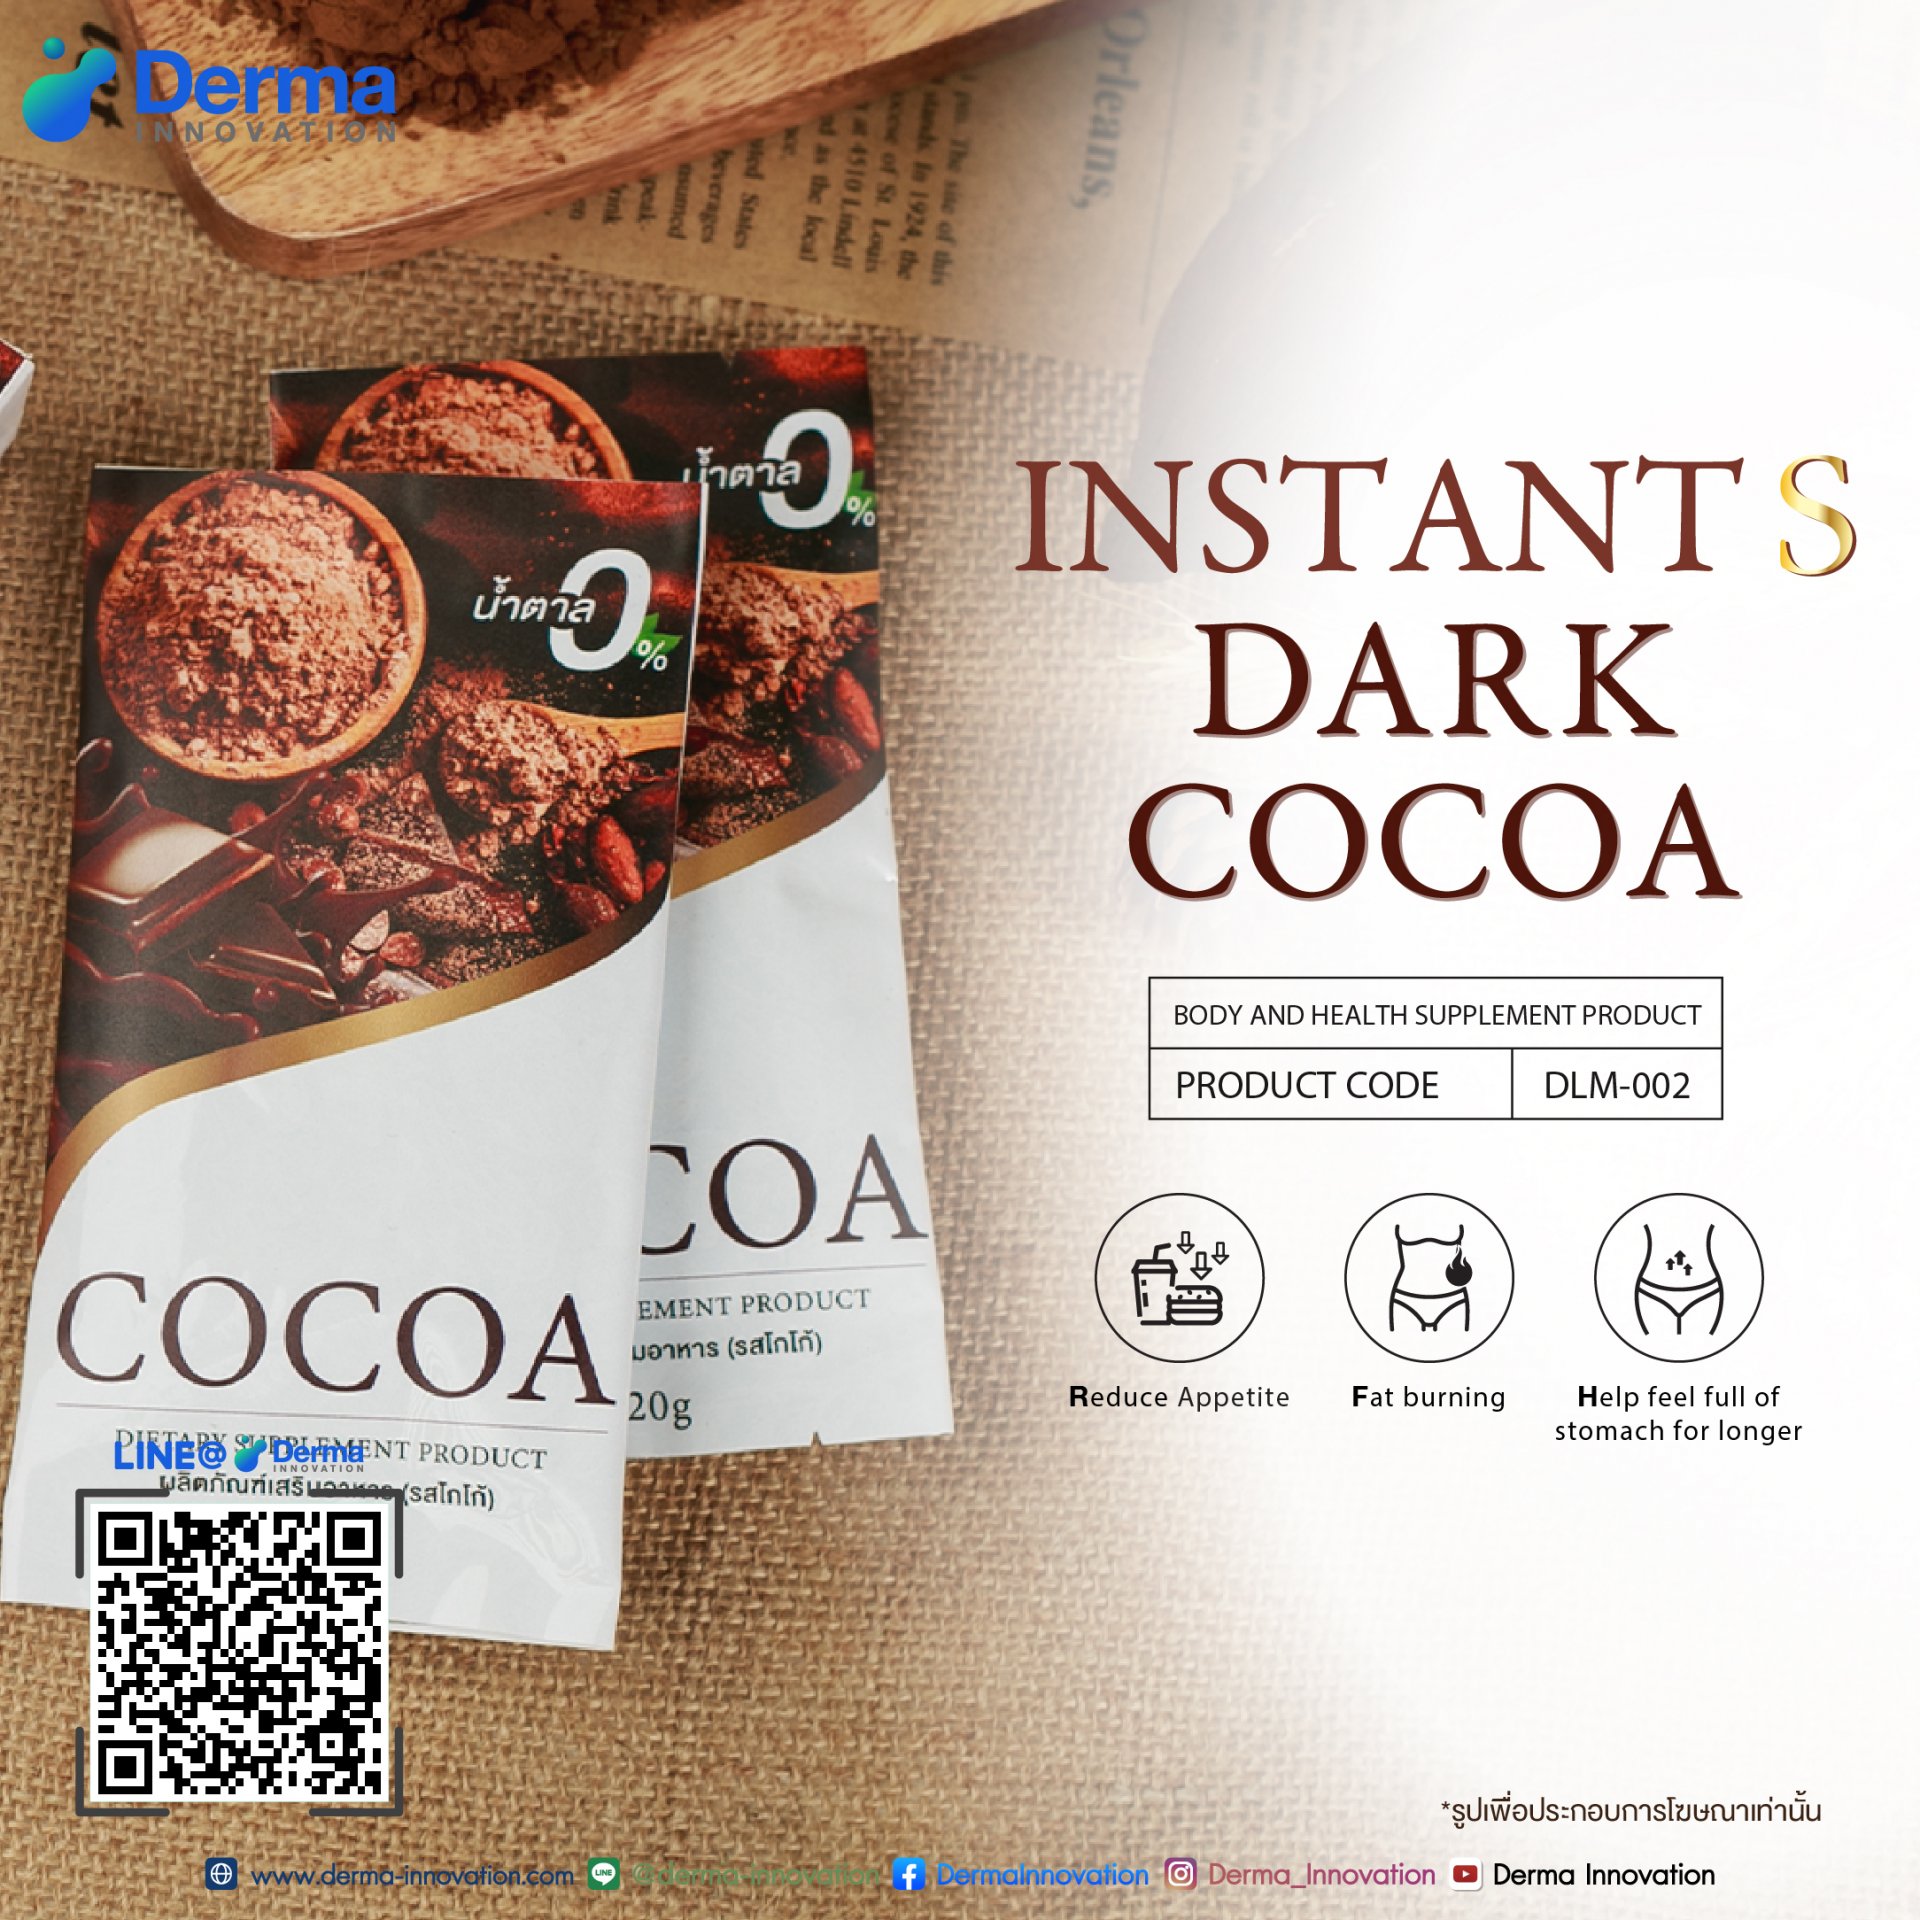 Instant S dark cocoa